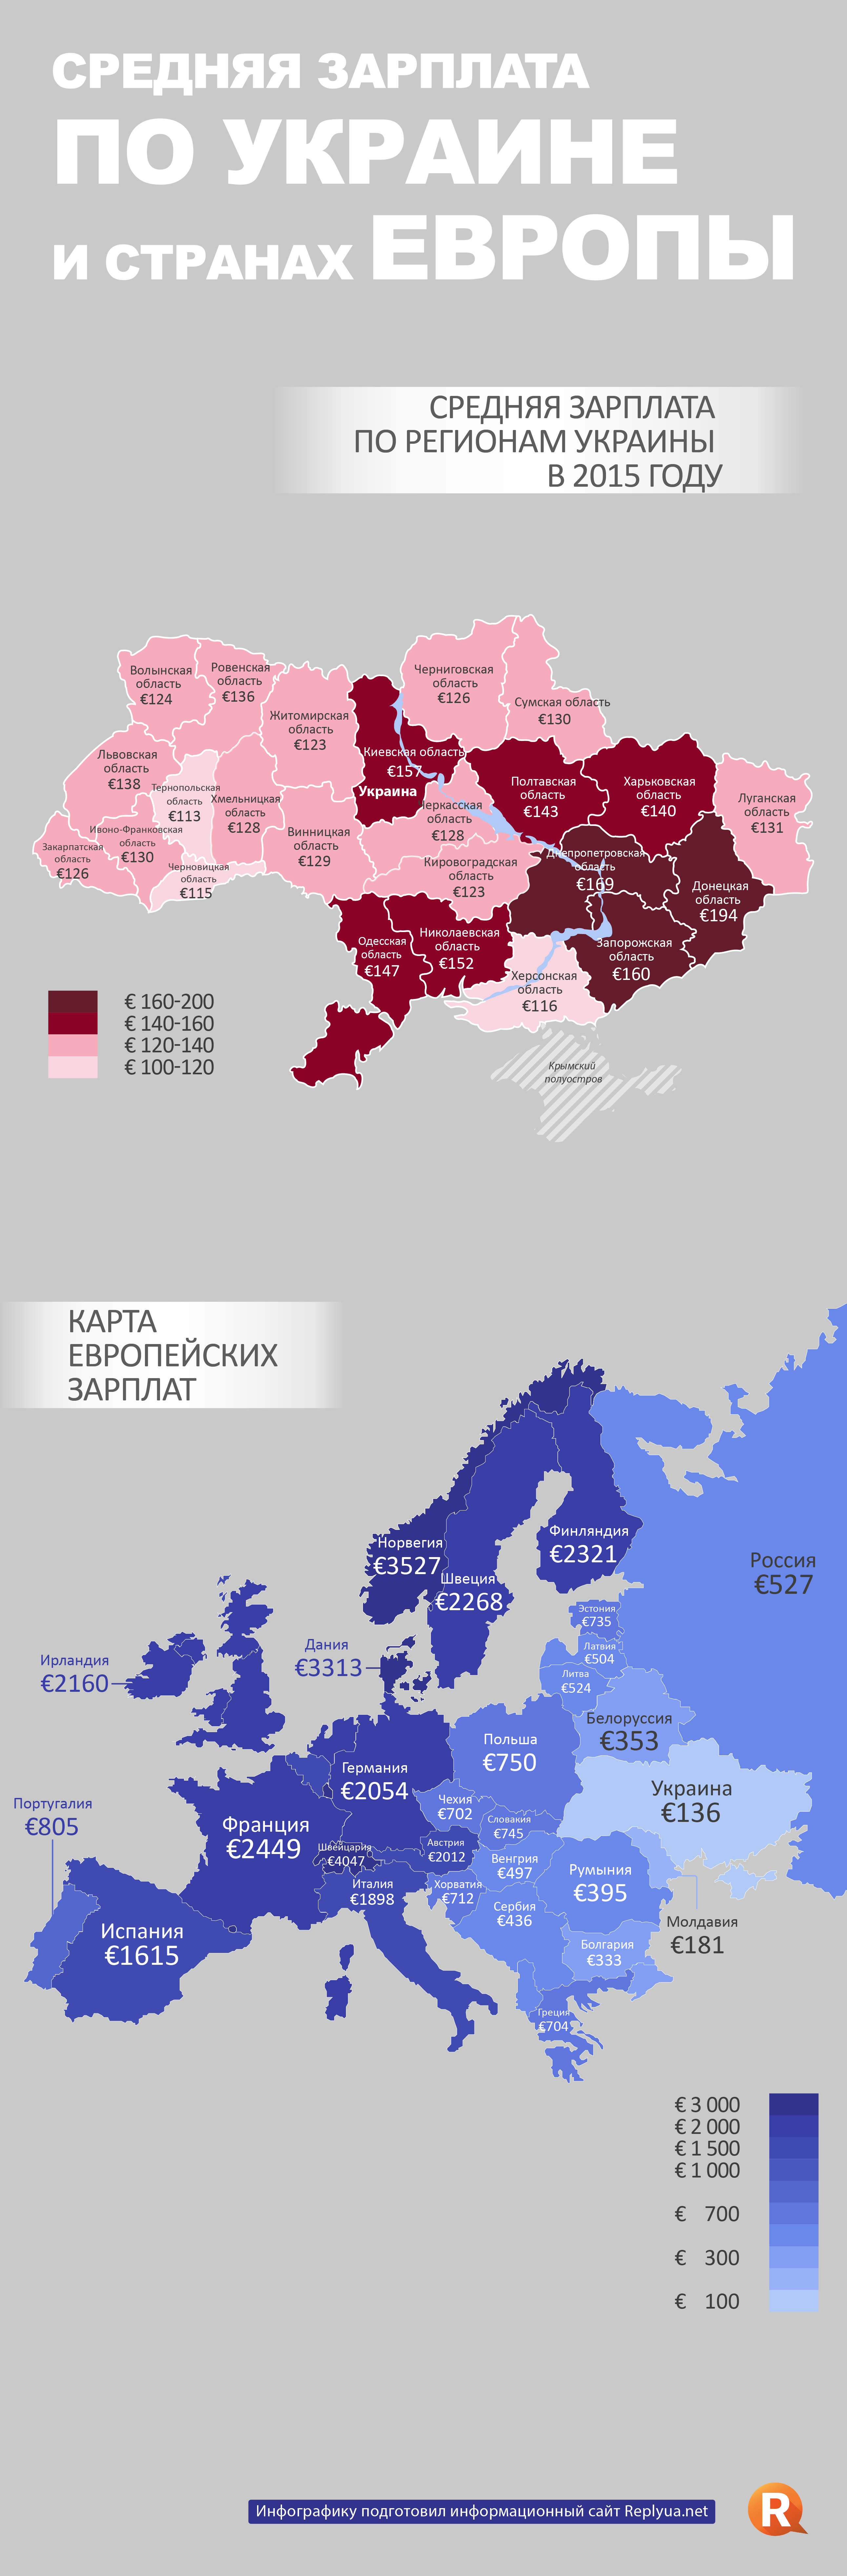 зарплата по Украине в 2015 году